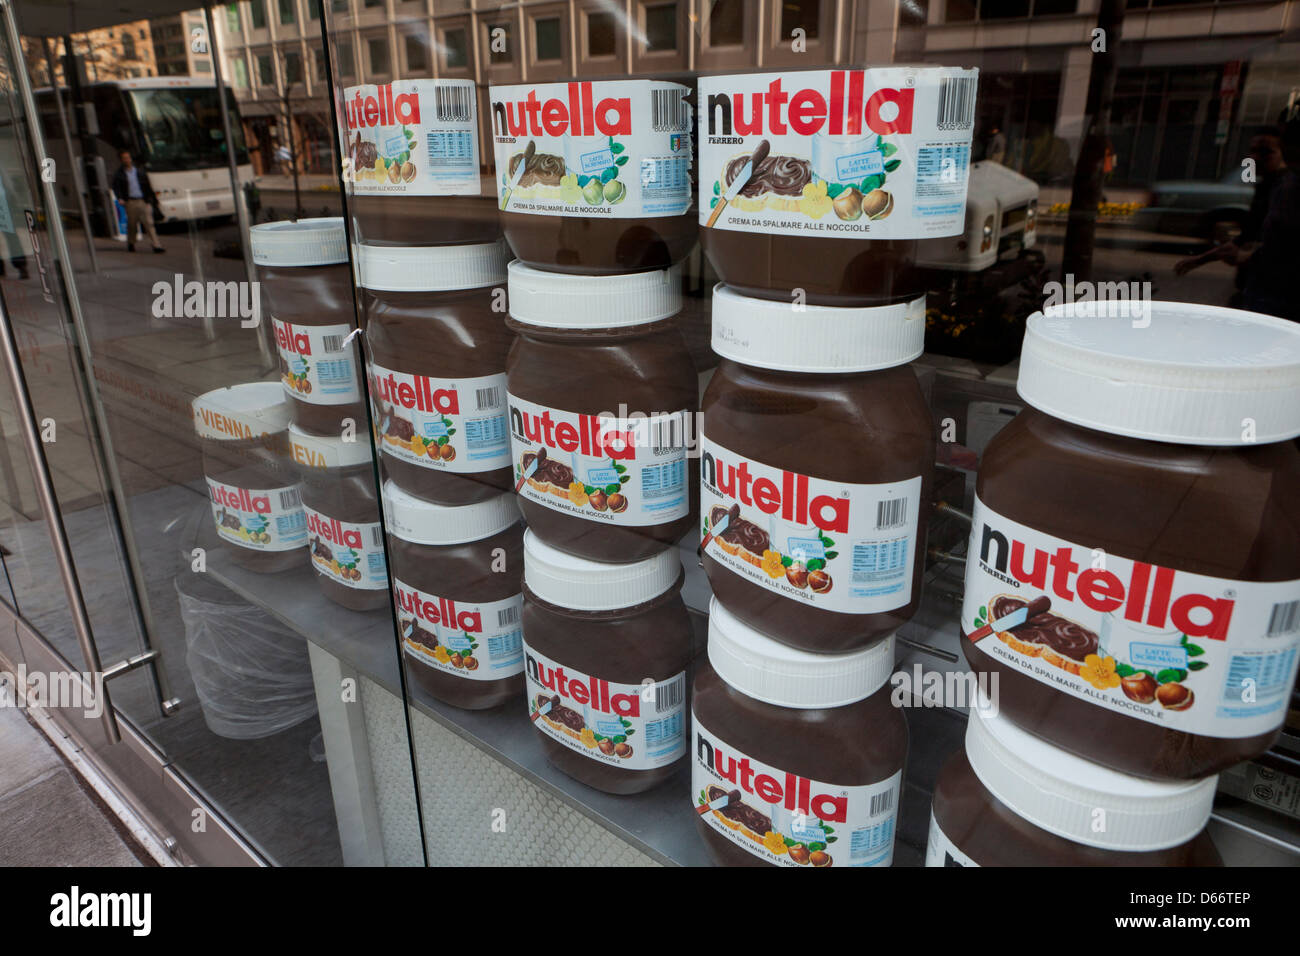 Nutella jars on display - USA Stock Photo